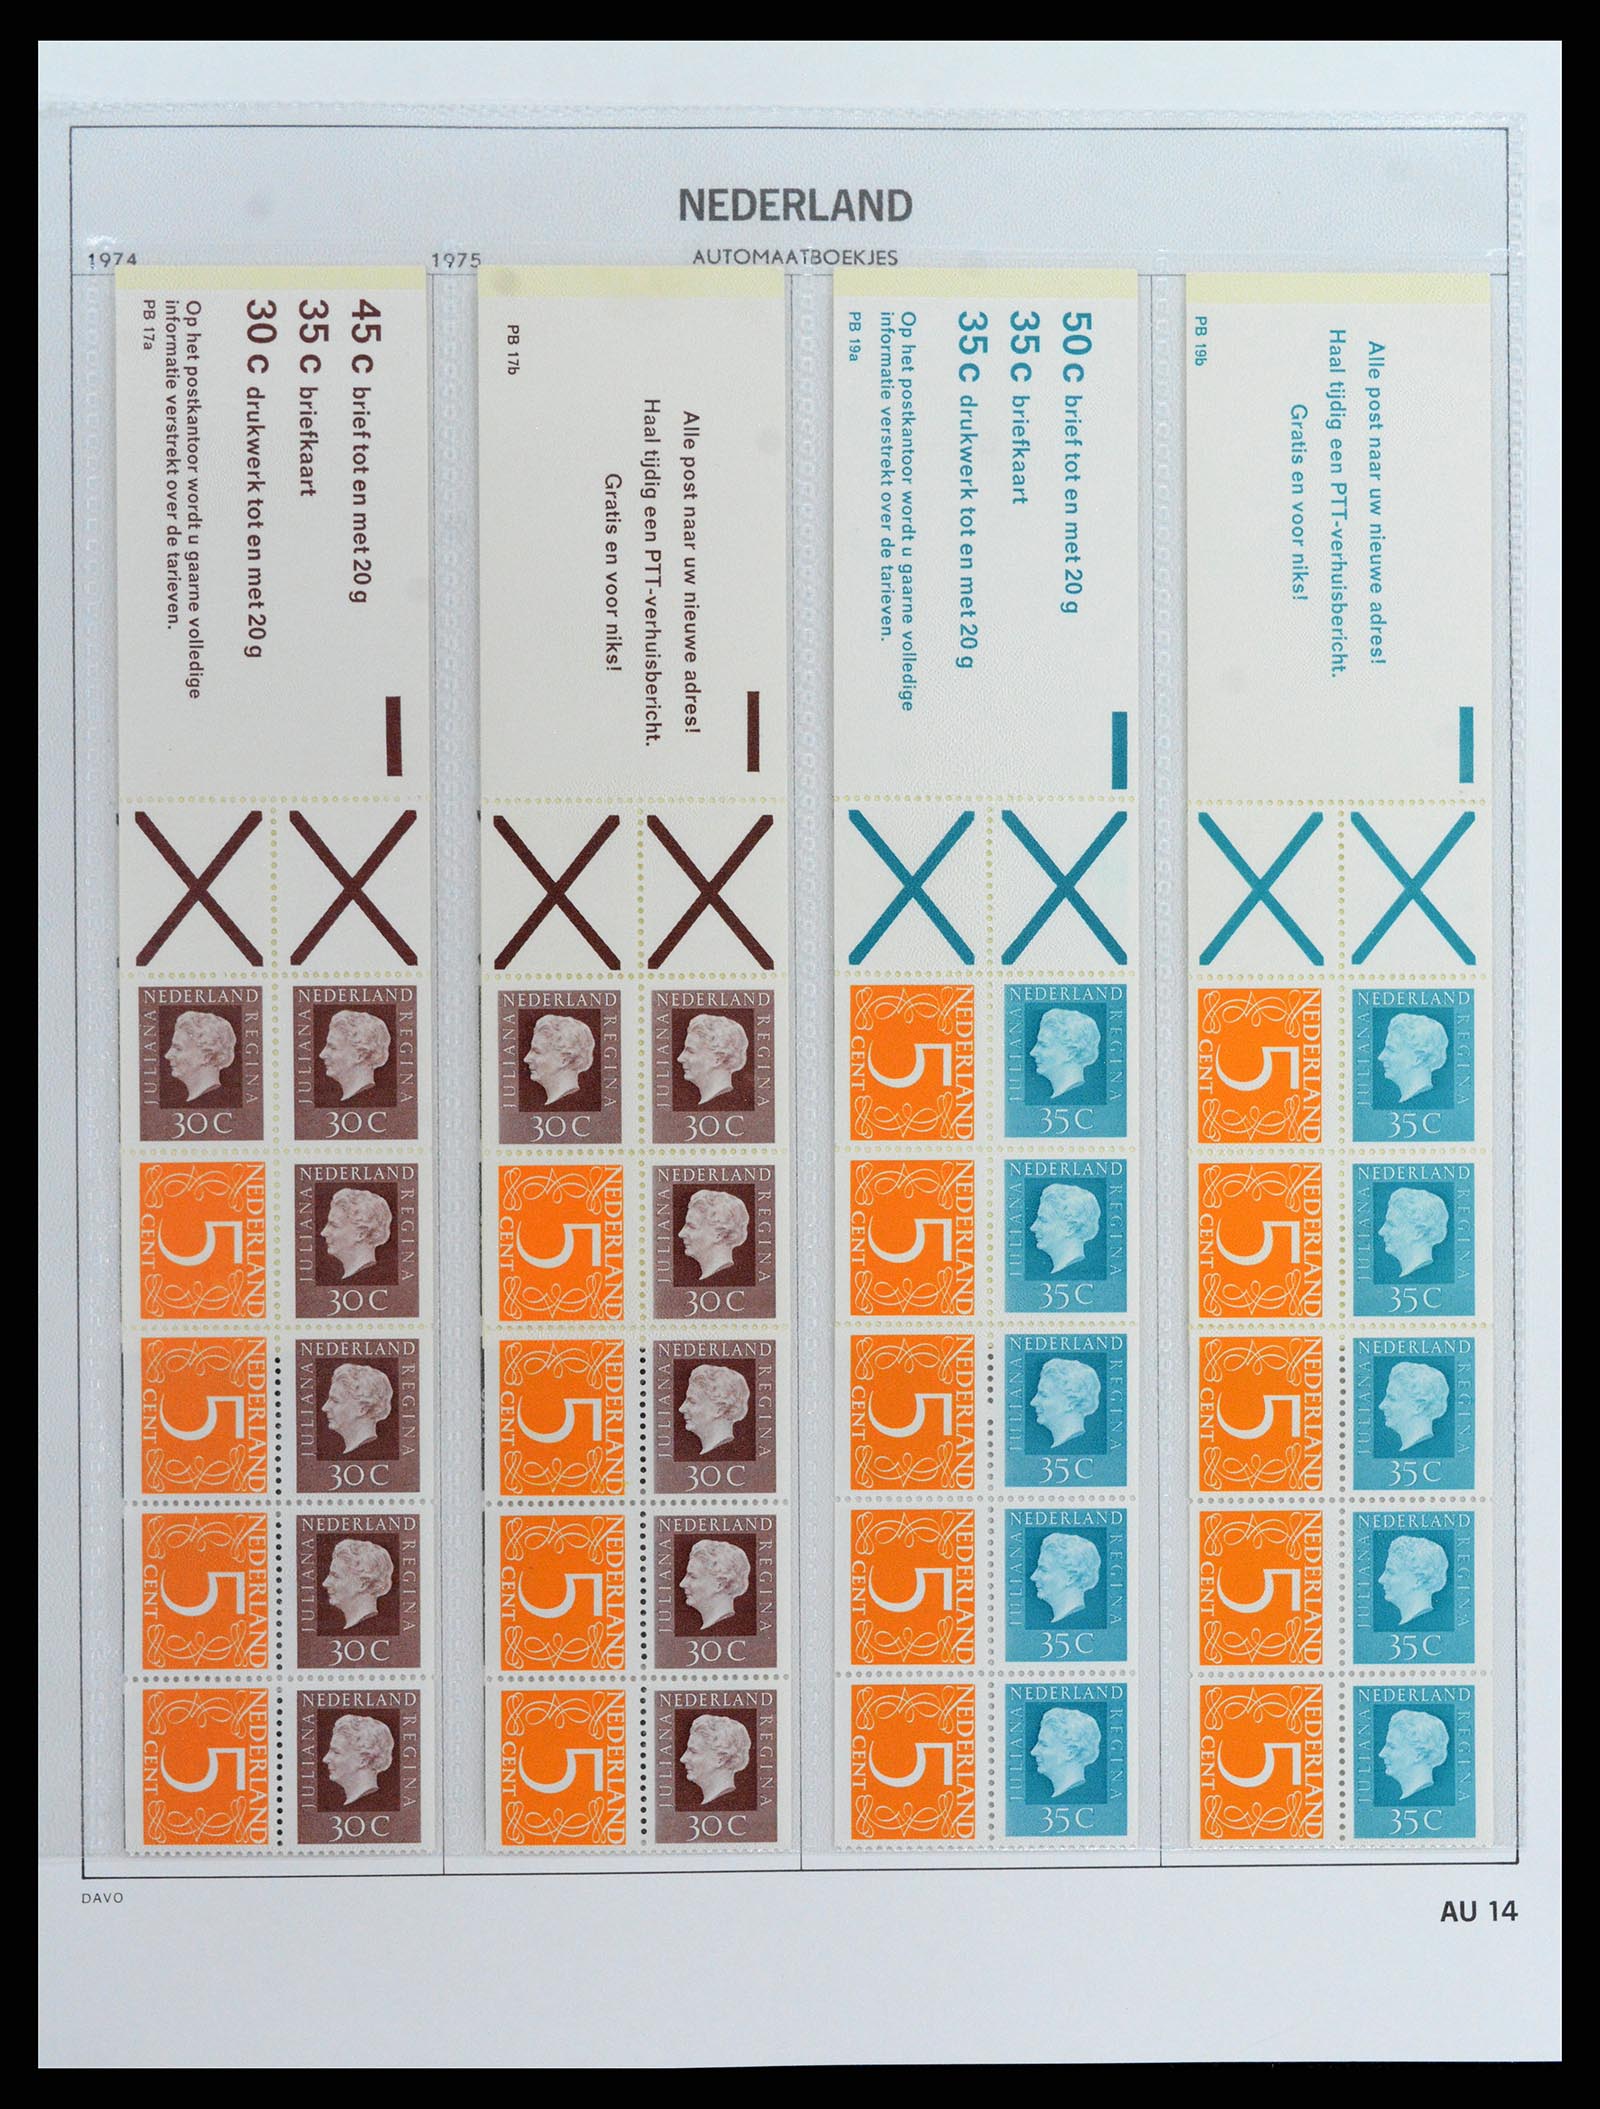 37871 014 - Stamp Collection 37871 Netherlands stampbooklets 1964-2000.